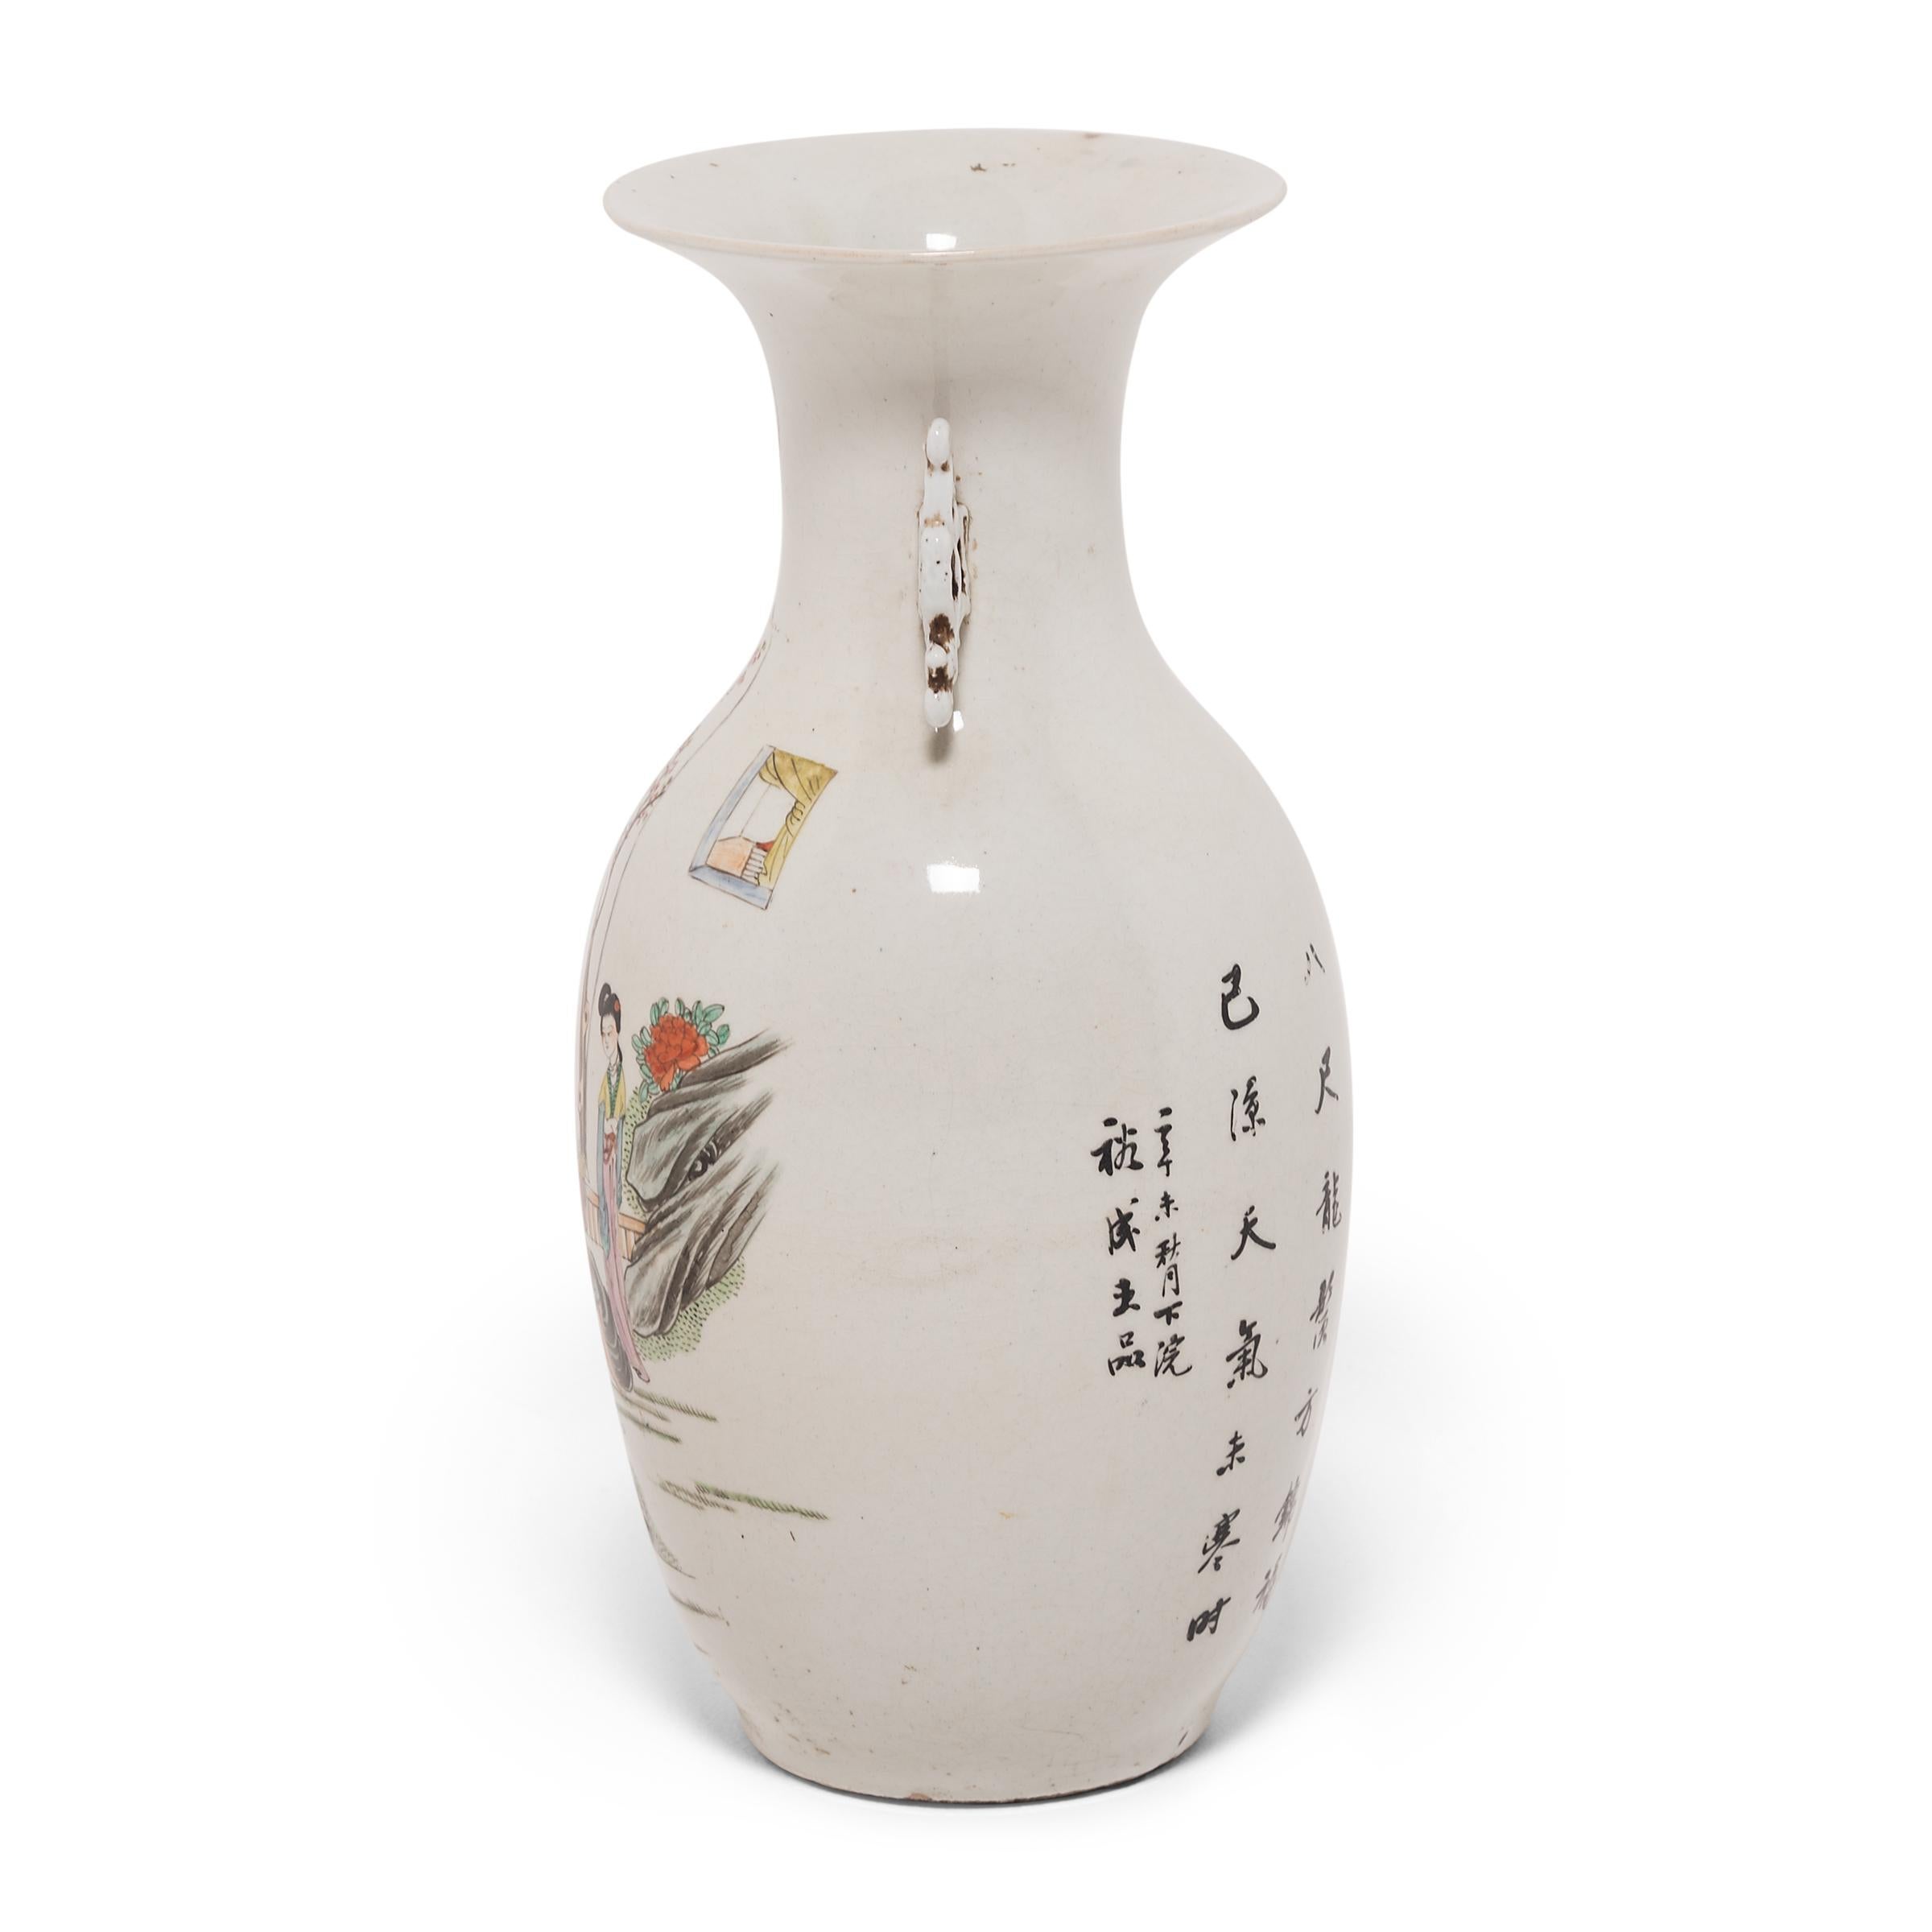 La forme de ce vase en porcelaine du XIXe siècle est appelée 